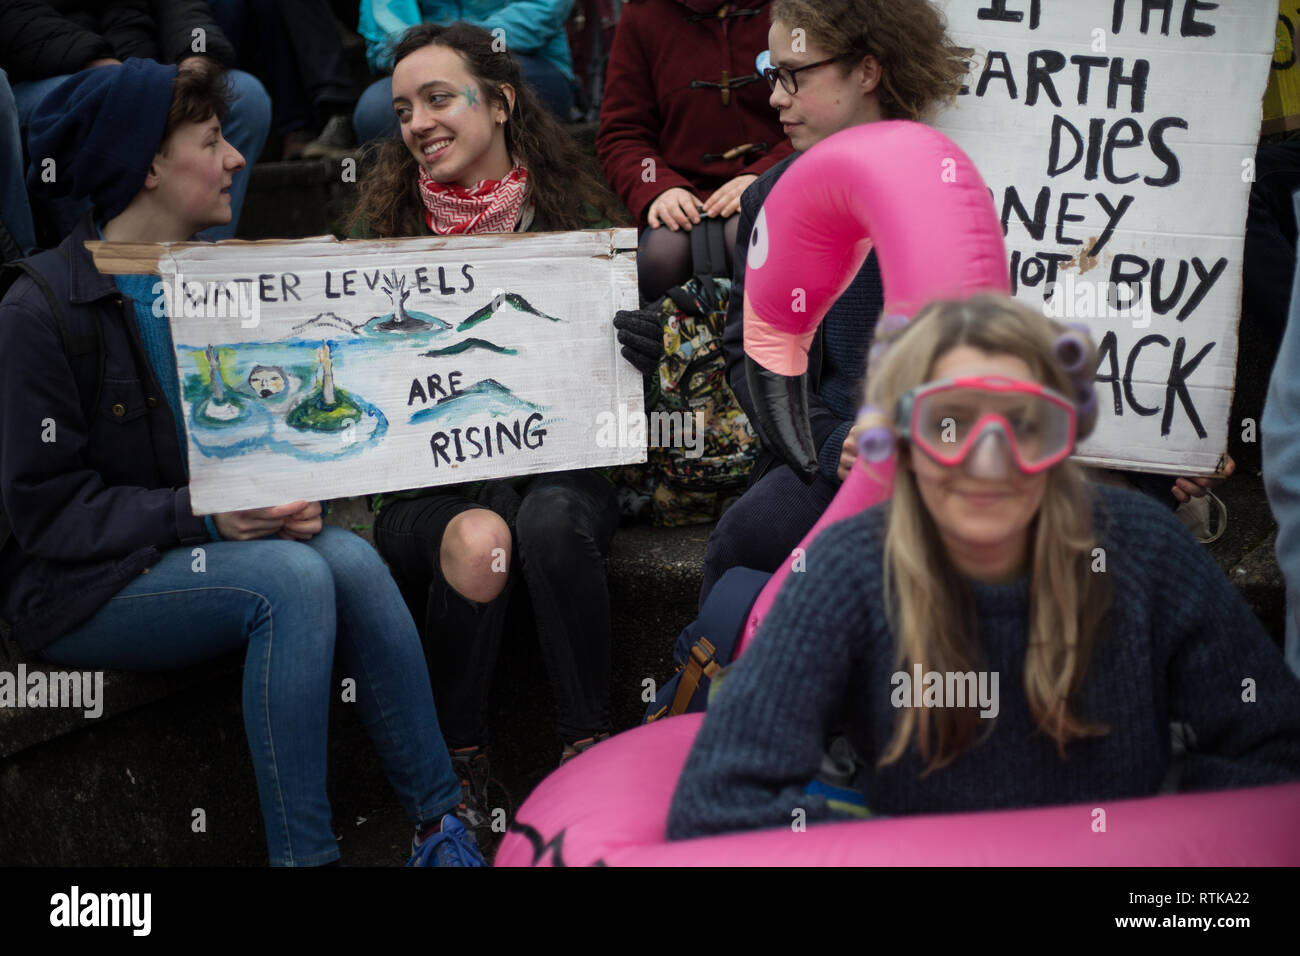 Glasgow, Scozia, 2 marzo 2019. Il "Onda Blu" dimostrazione da parte della ribellione di estinzione il cambiamento climatico e il gruppo di sostenitori, bloccando le strade e si muove attraverso le strade della città per evidenziare l'innalzamento delle acque del fiume Clyde e a mettere in guardia contro i pericoli del cambiamento climatico se un intervento urgente non viene presa immediatamente. La dimostrazione pacifica di circa 200 persone che culminò con il simbolico lancio di acqua dal fiume Clyde al City Chambers passi, un simbolo dei livelli di acqua a venire. In Glasgow, Scozia. Credito: Jeremy Sutton-Hibbert/Alamy Live News. Foto Stock